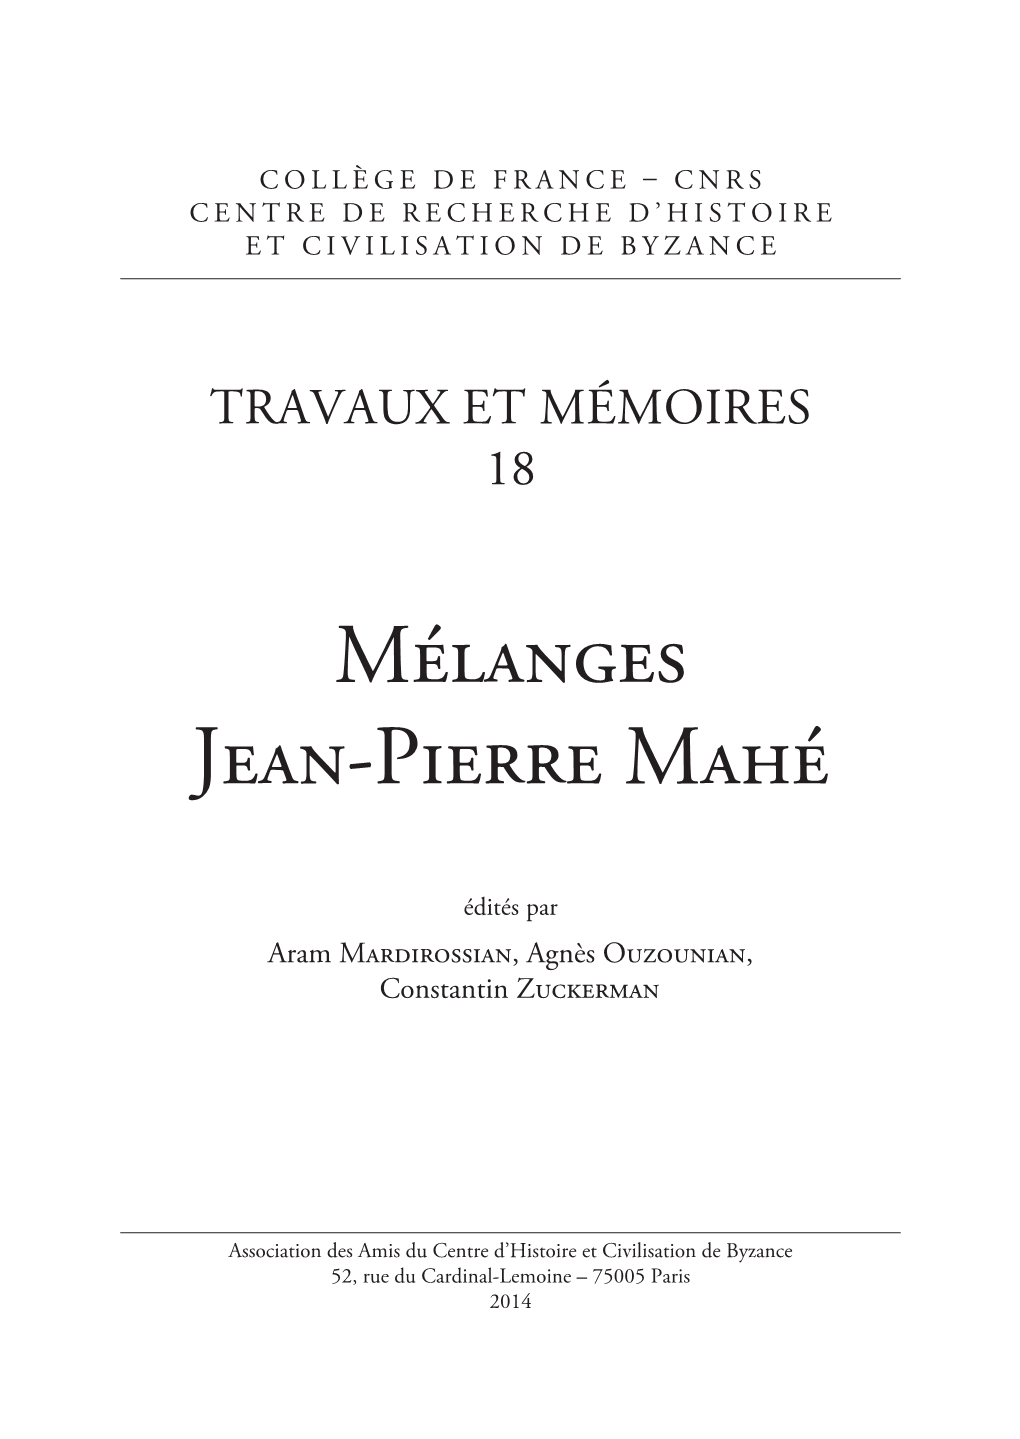 Mélanges Jean-Pierre Mahé